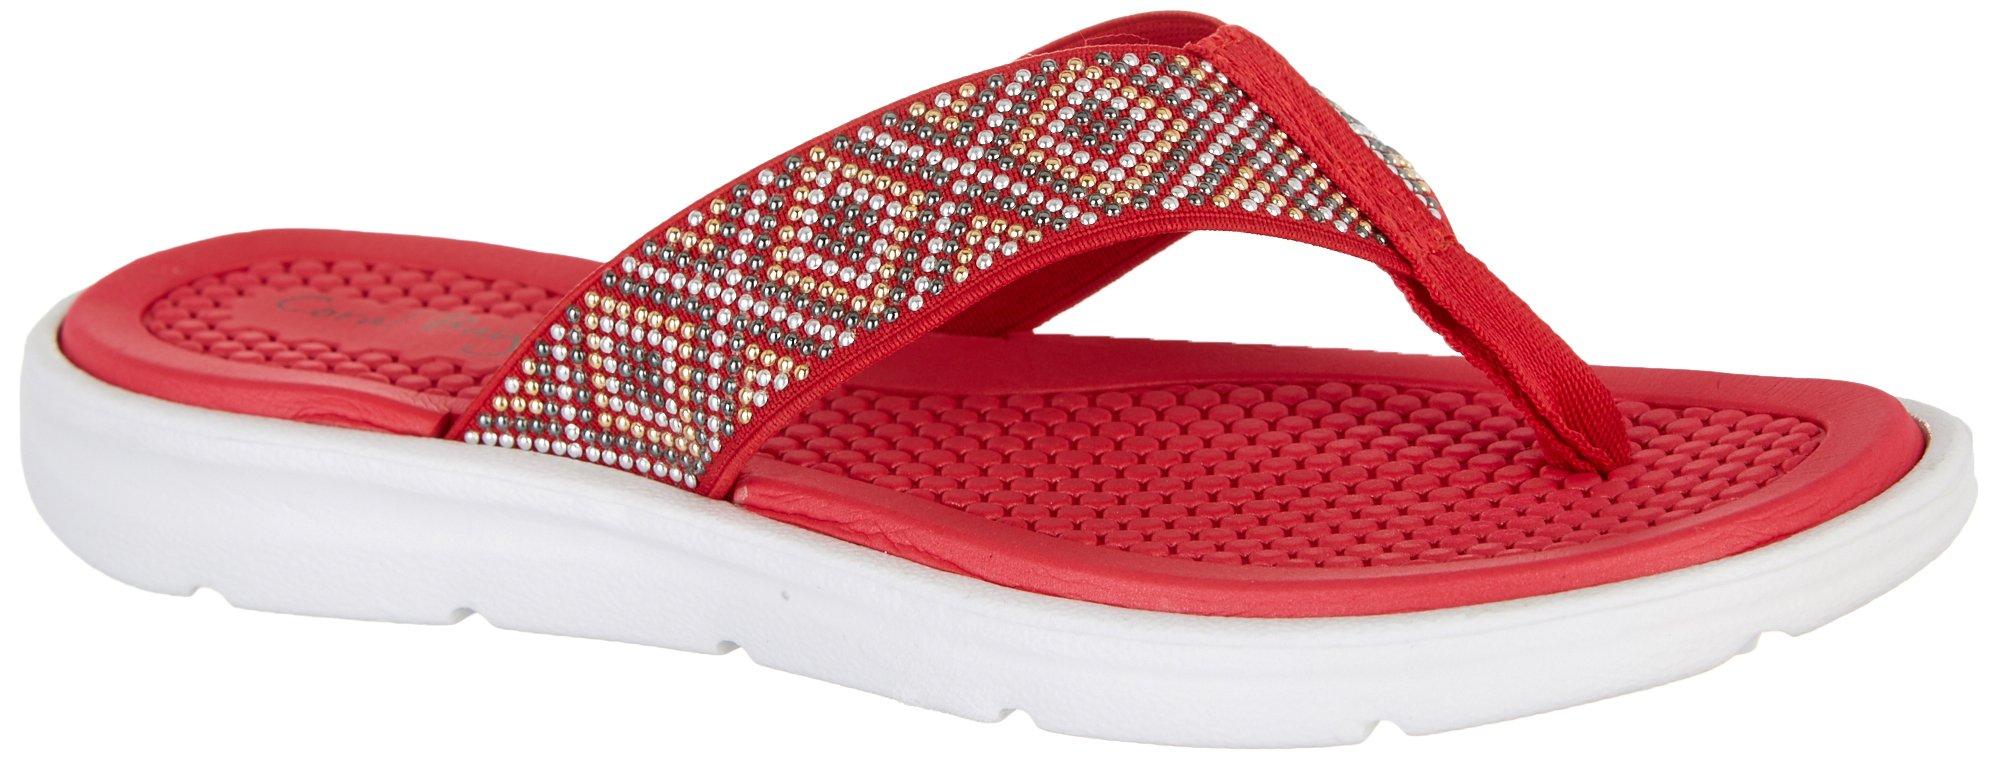 Flip Flops for Women | Beach Sandals | Bealls Florida